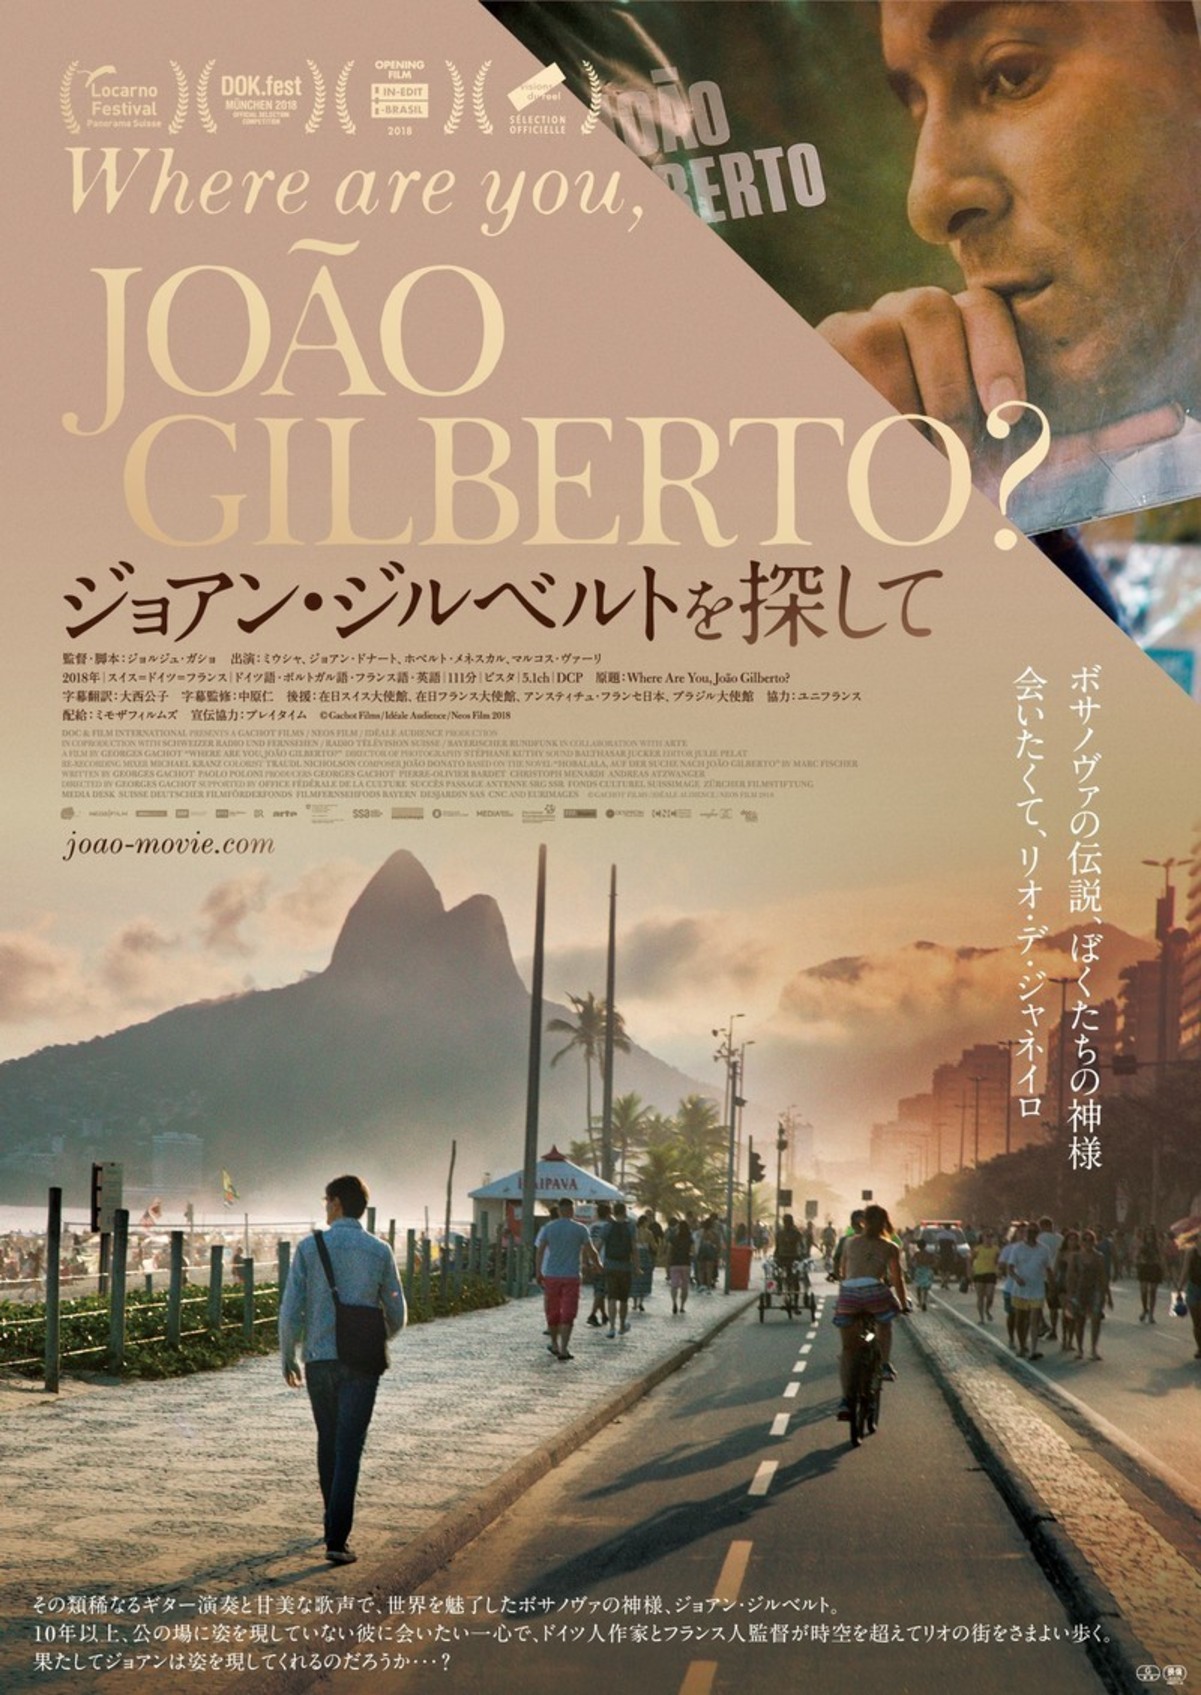 ボサノバの神様を追ったドキュメンタリー ジョアン ジルベルトを探して 8月24日公開 映画ニュース 映画 Com